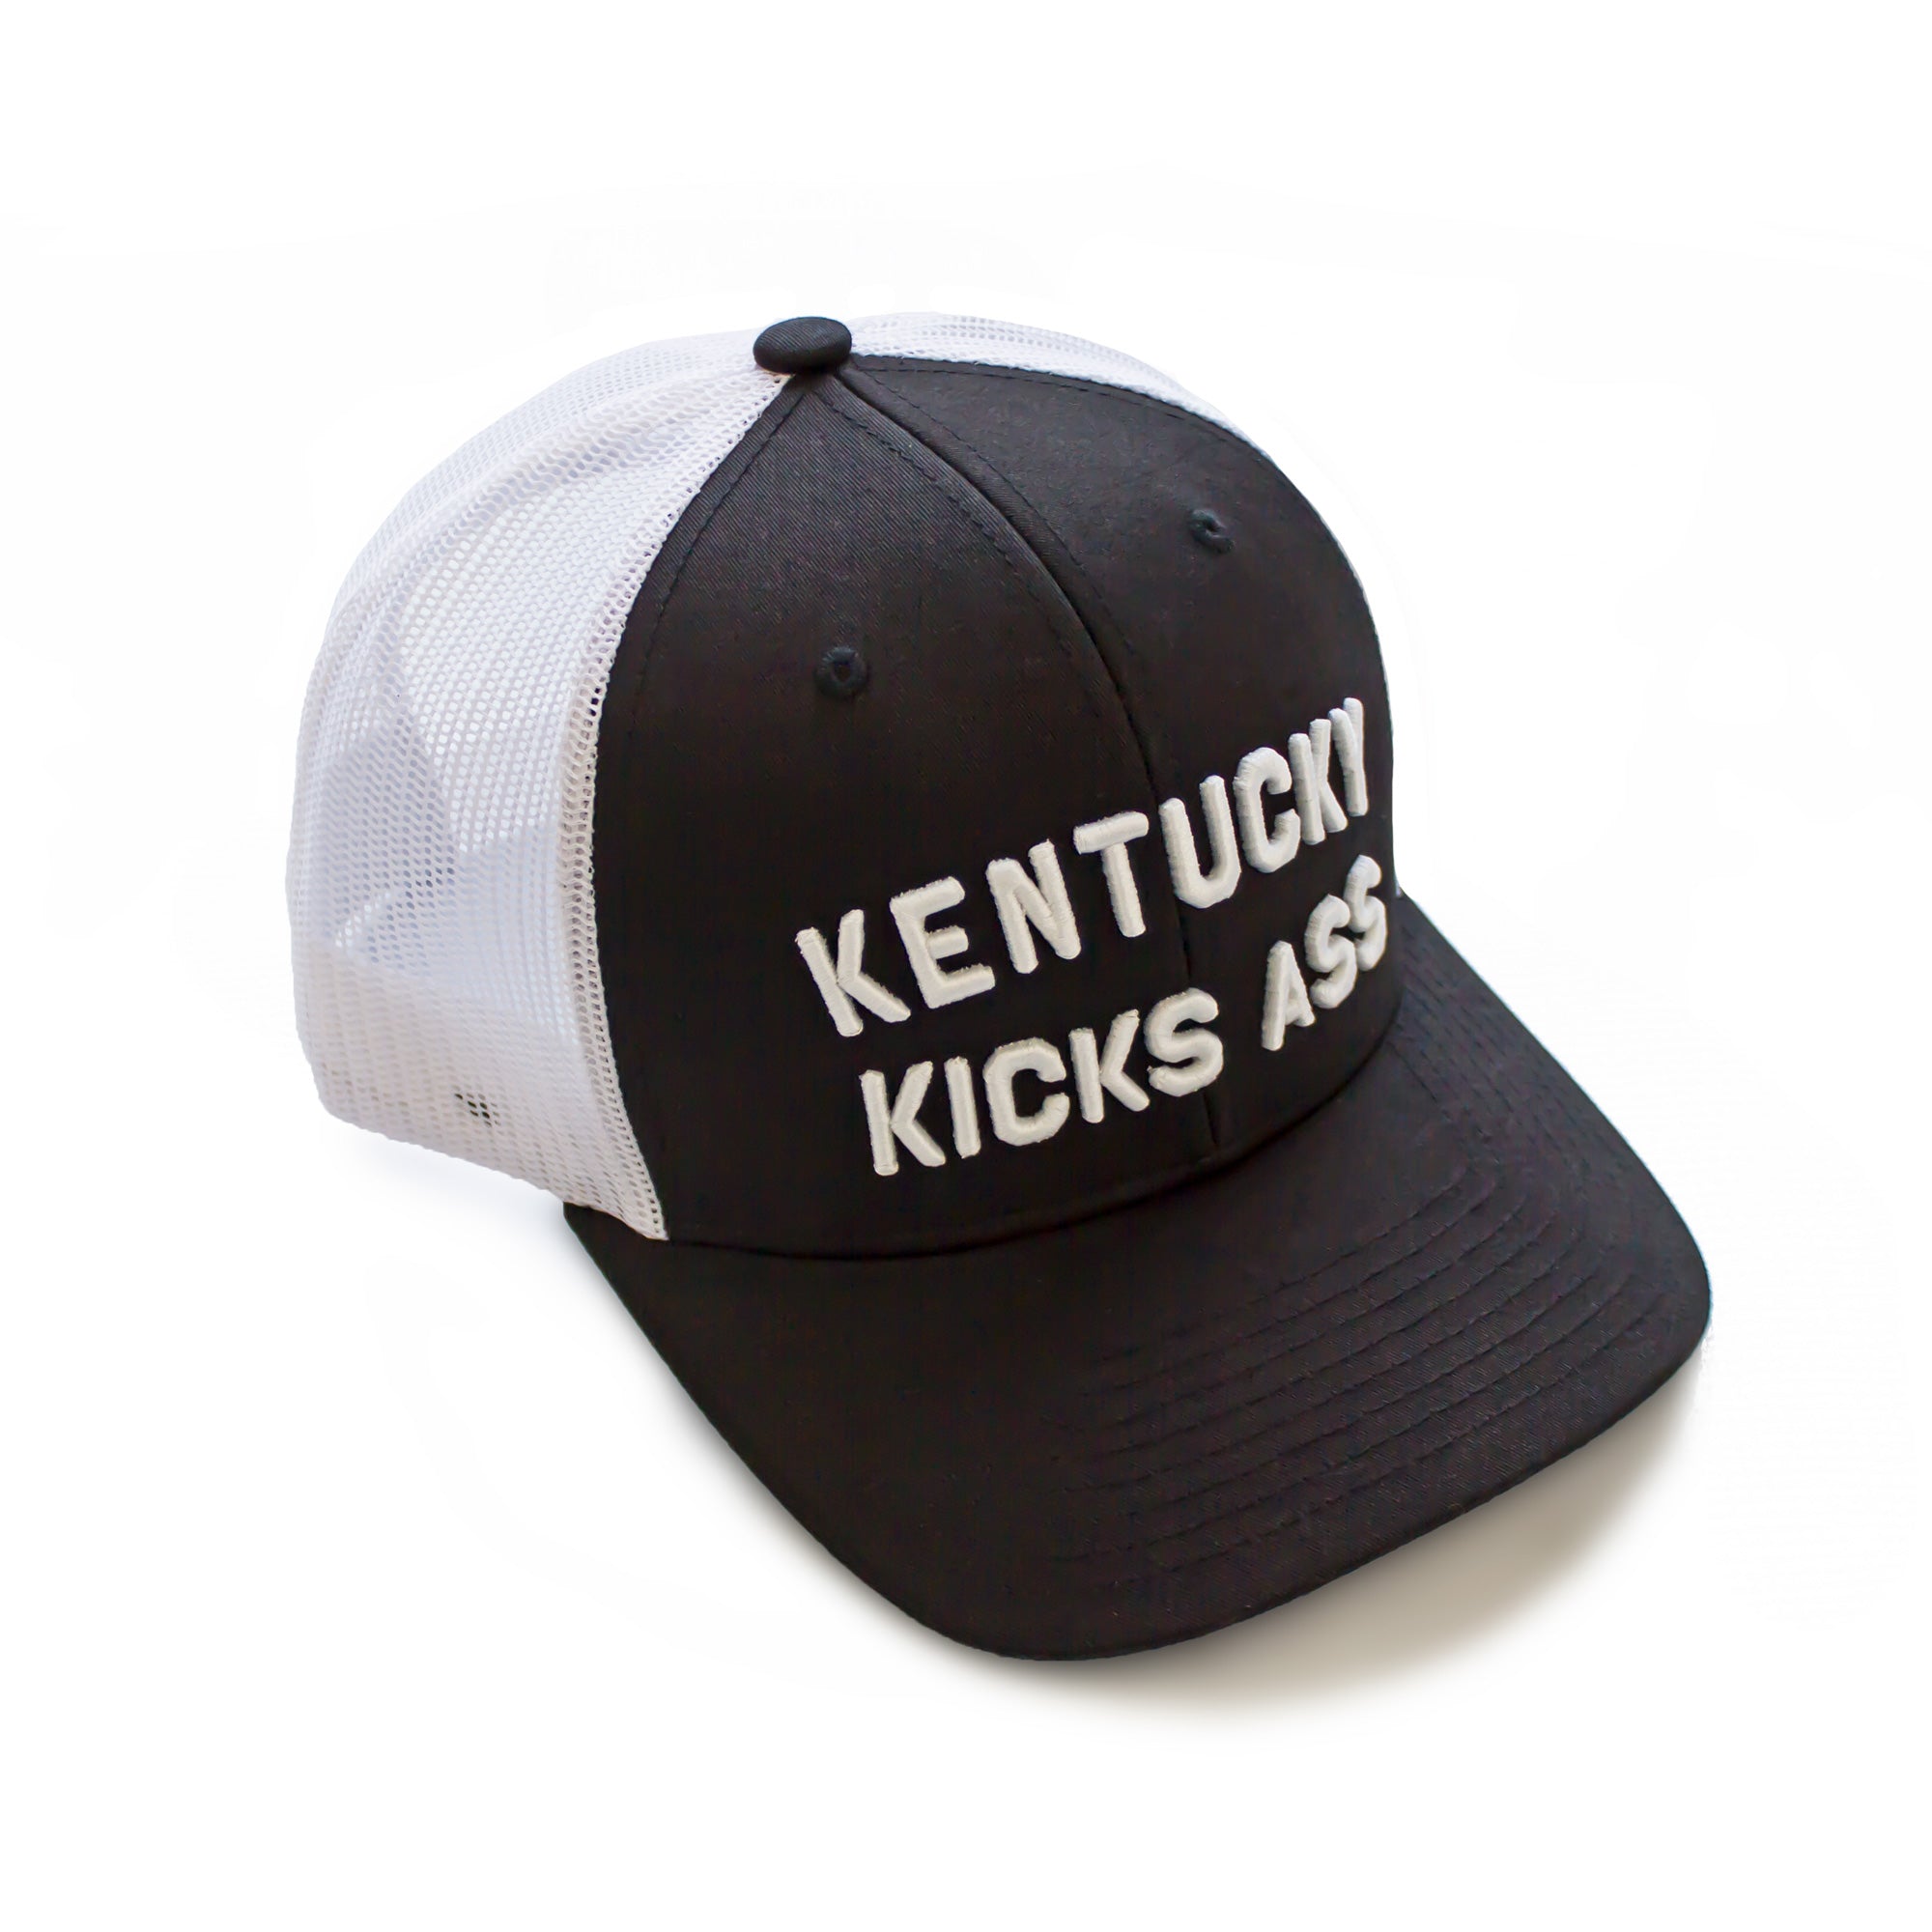 Kentucky Kicks Ass Trucker Hat (Black)-Hat-KY for KY Store